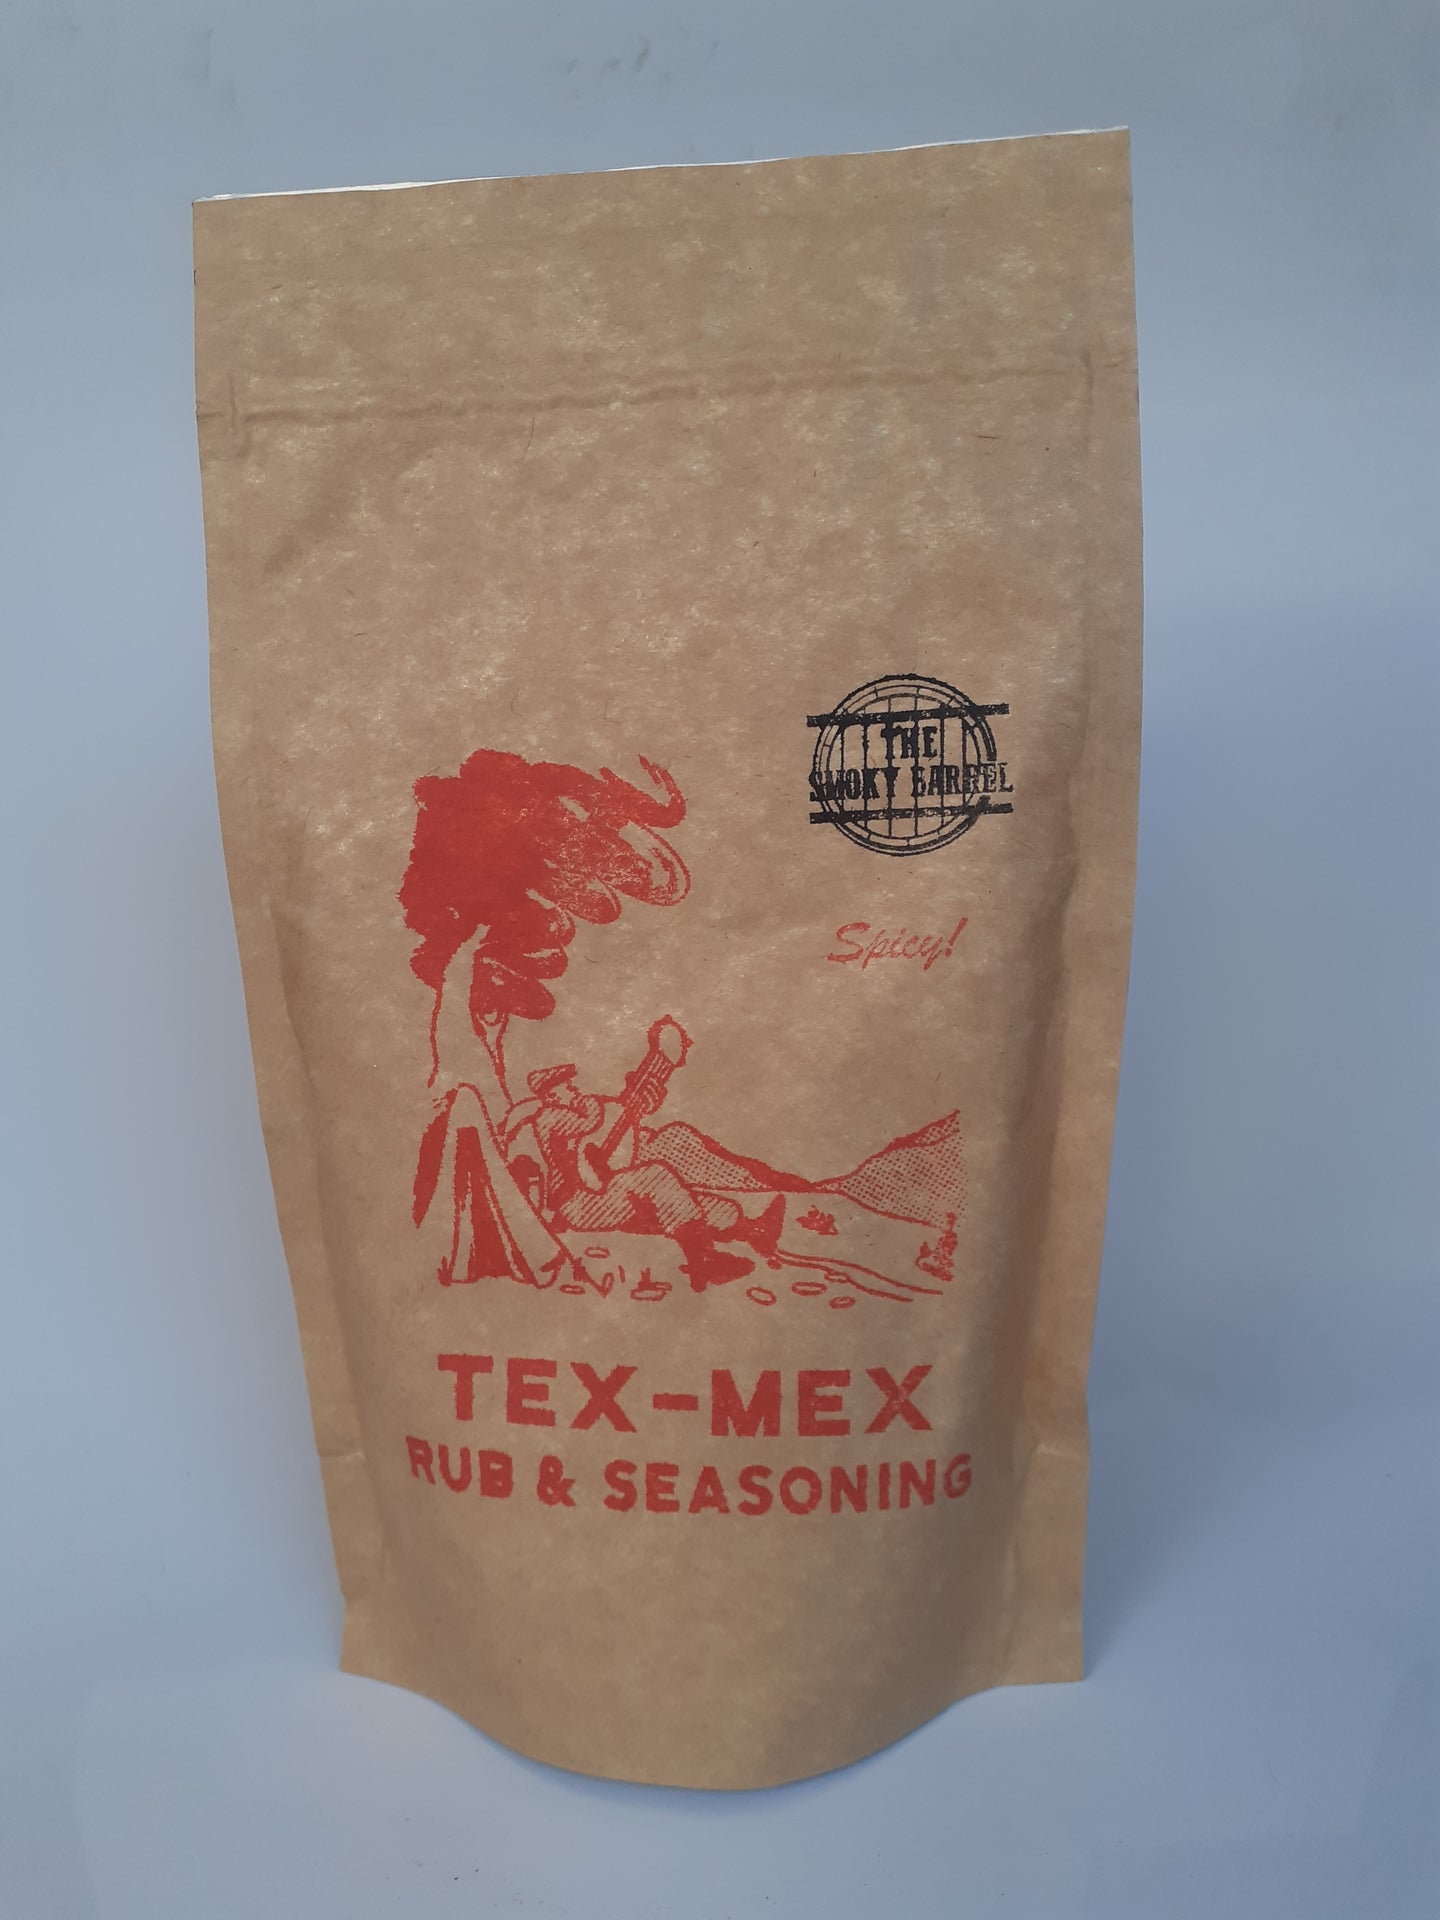 Smoky barrel Tex-Mex flavour rub and seasoning - 200g